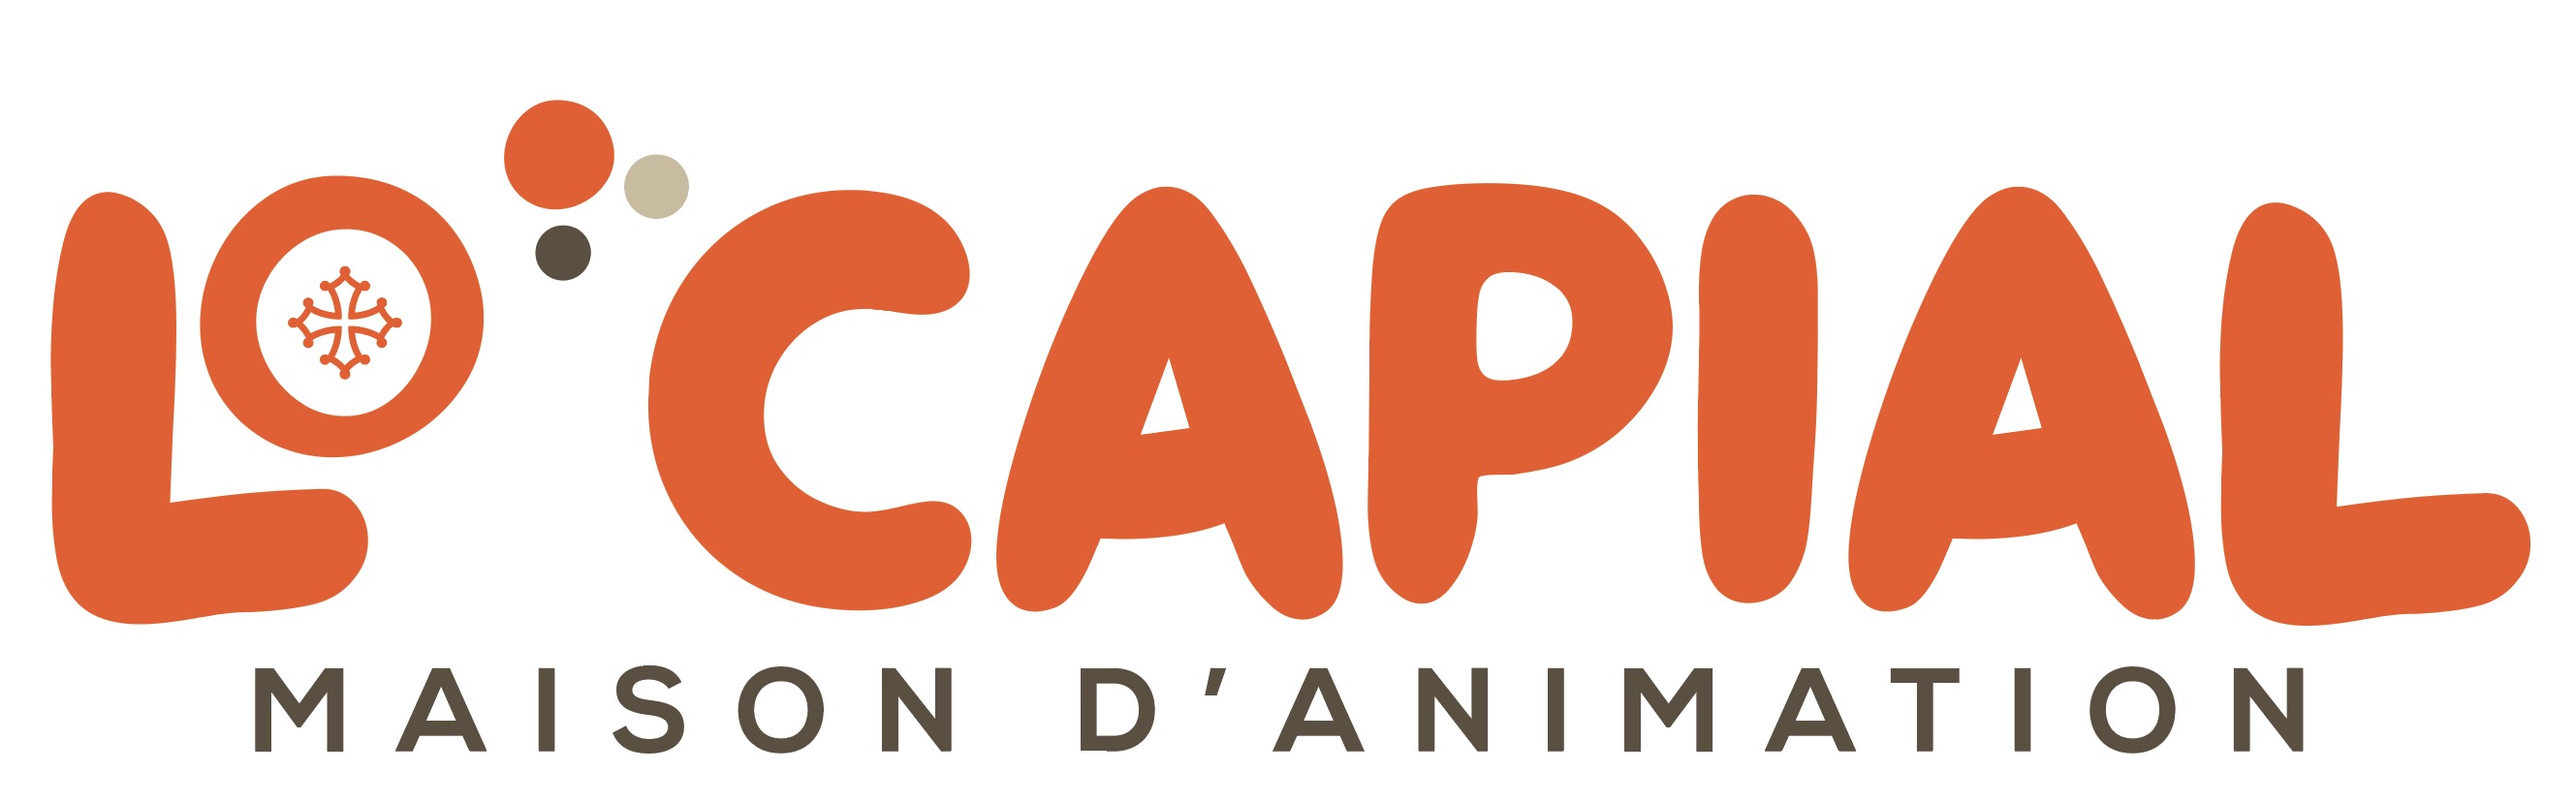 Maison d' Animation Lo Capial